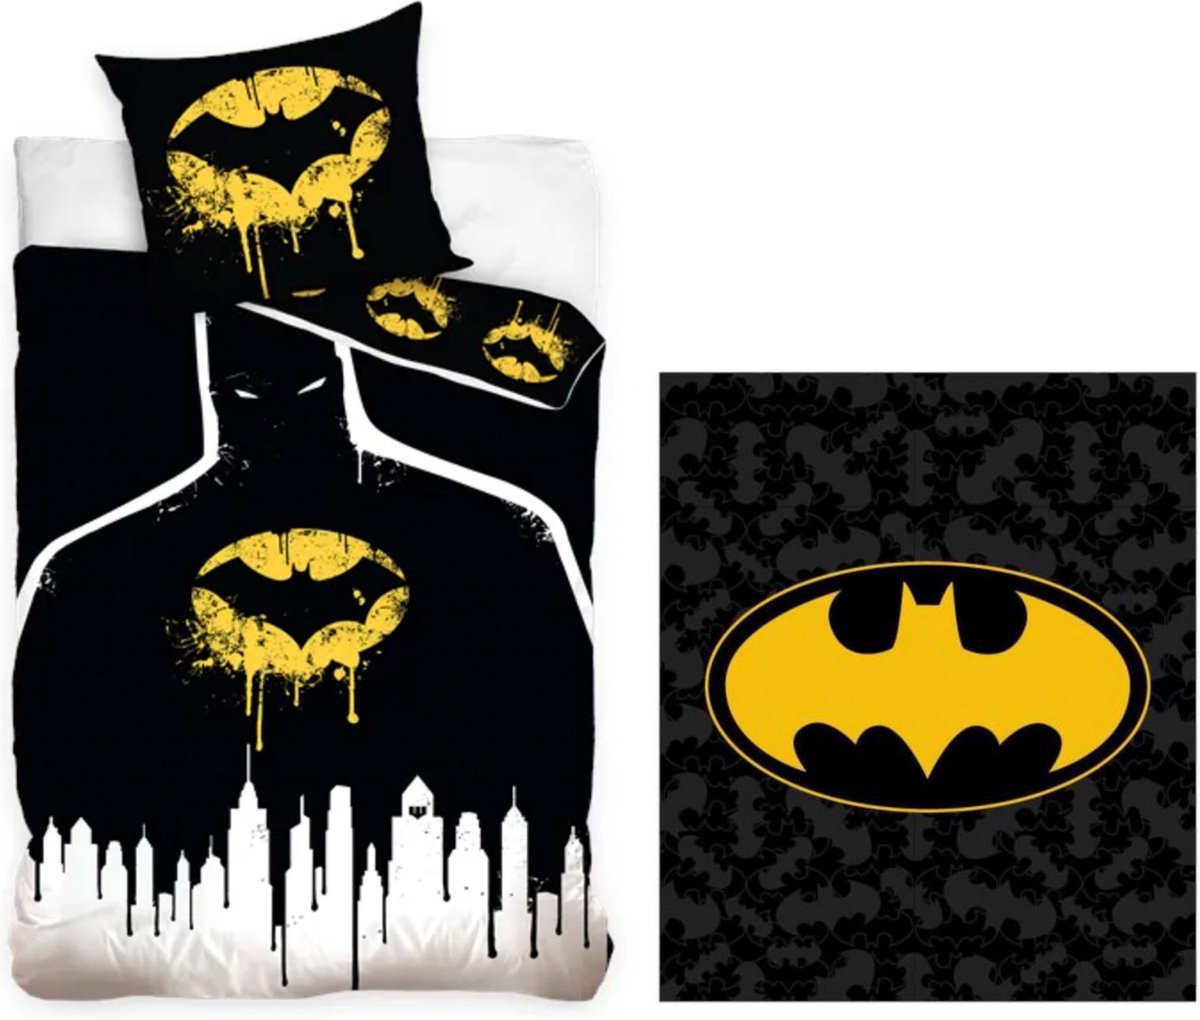 Batman Dekbedovertrek Geel/Zwart - 100% Katoen - Eenpersoons - 140x200 cm - incl. Fleece deken Batman- zwart/geel- 120x150cm- polyester- warme deken.